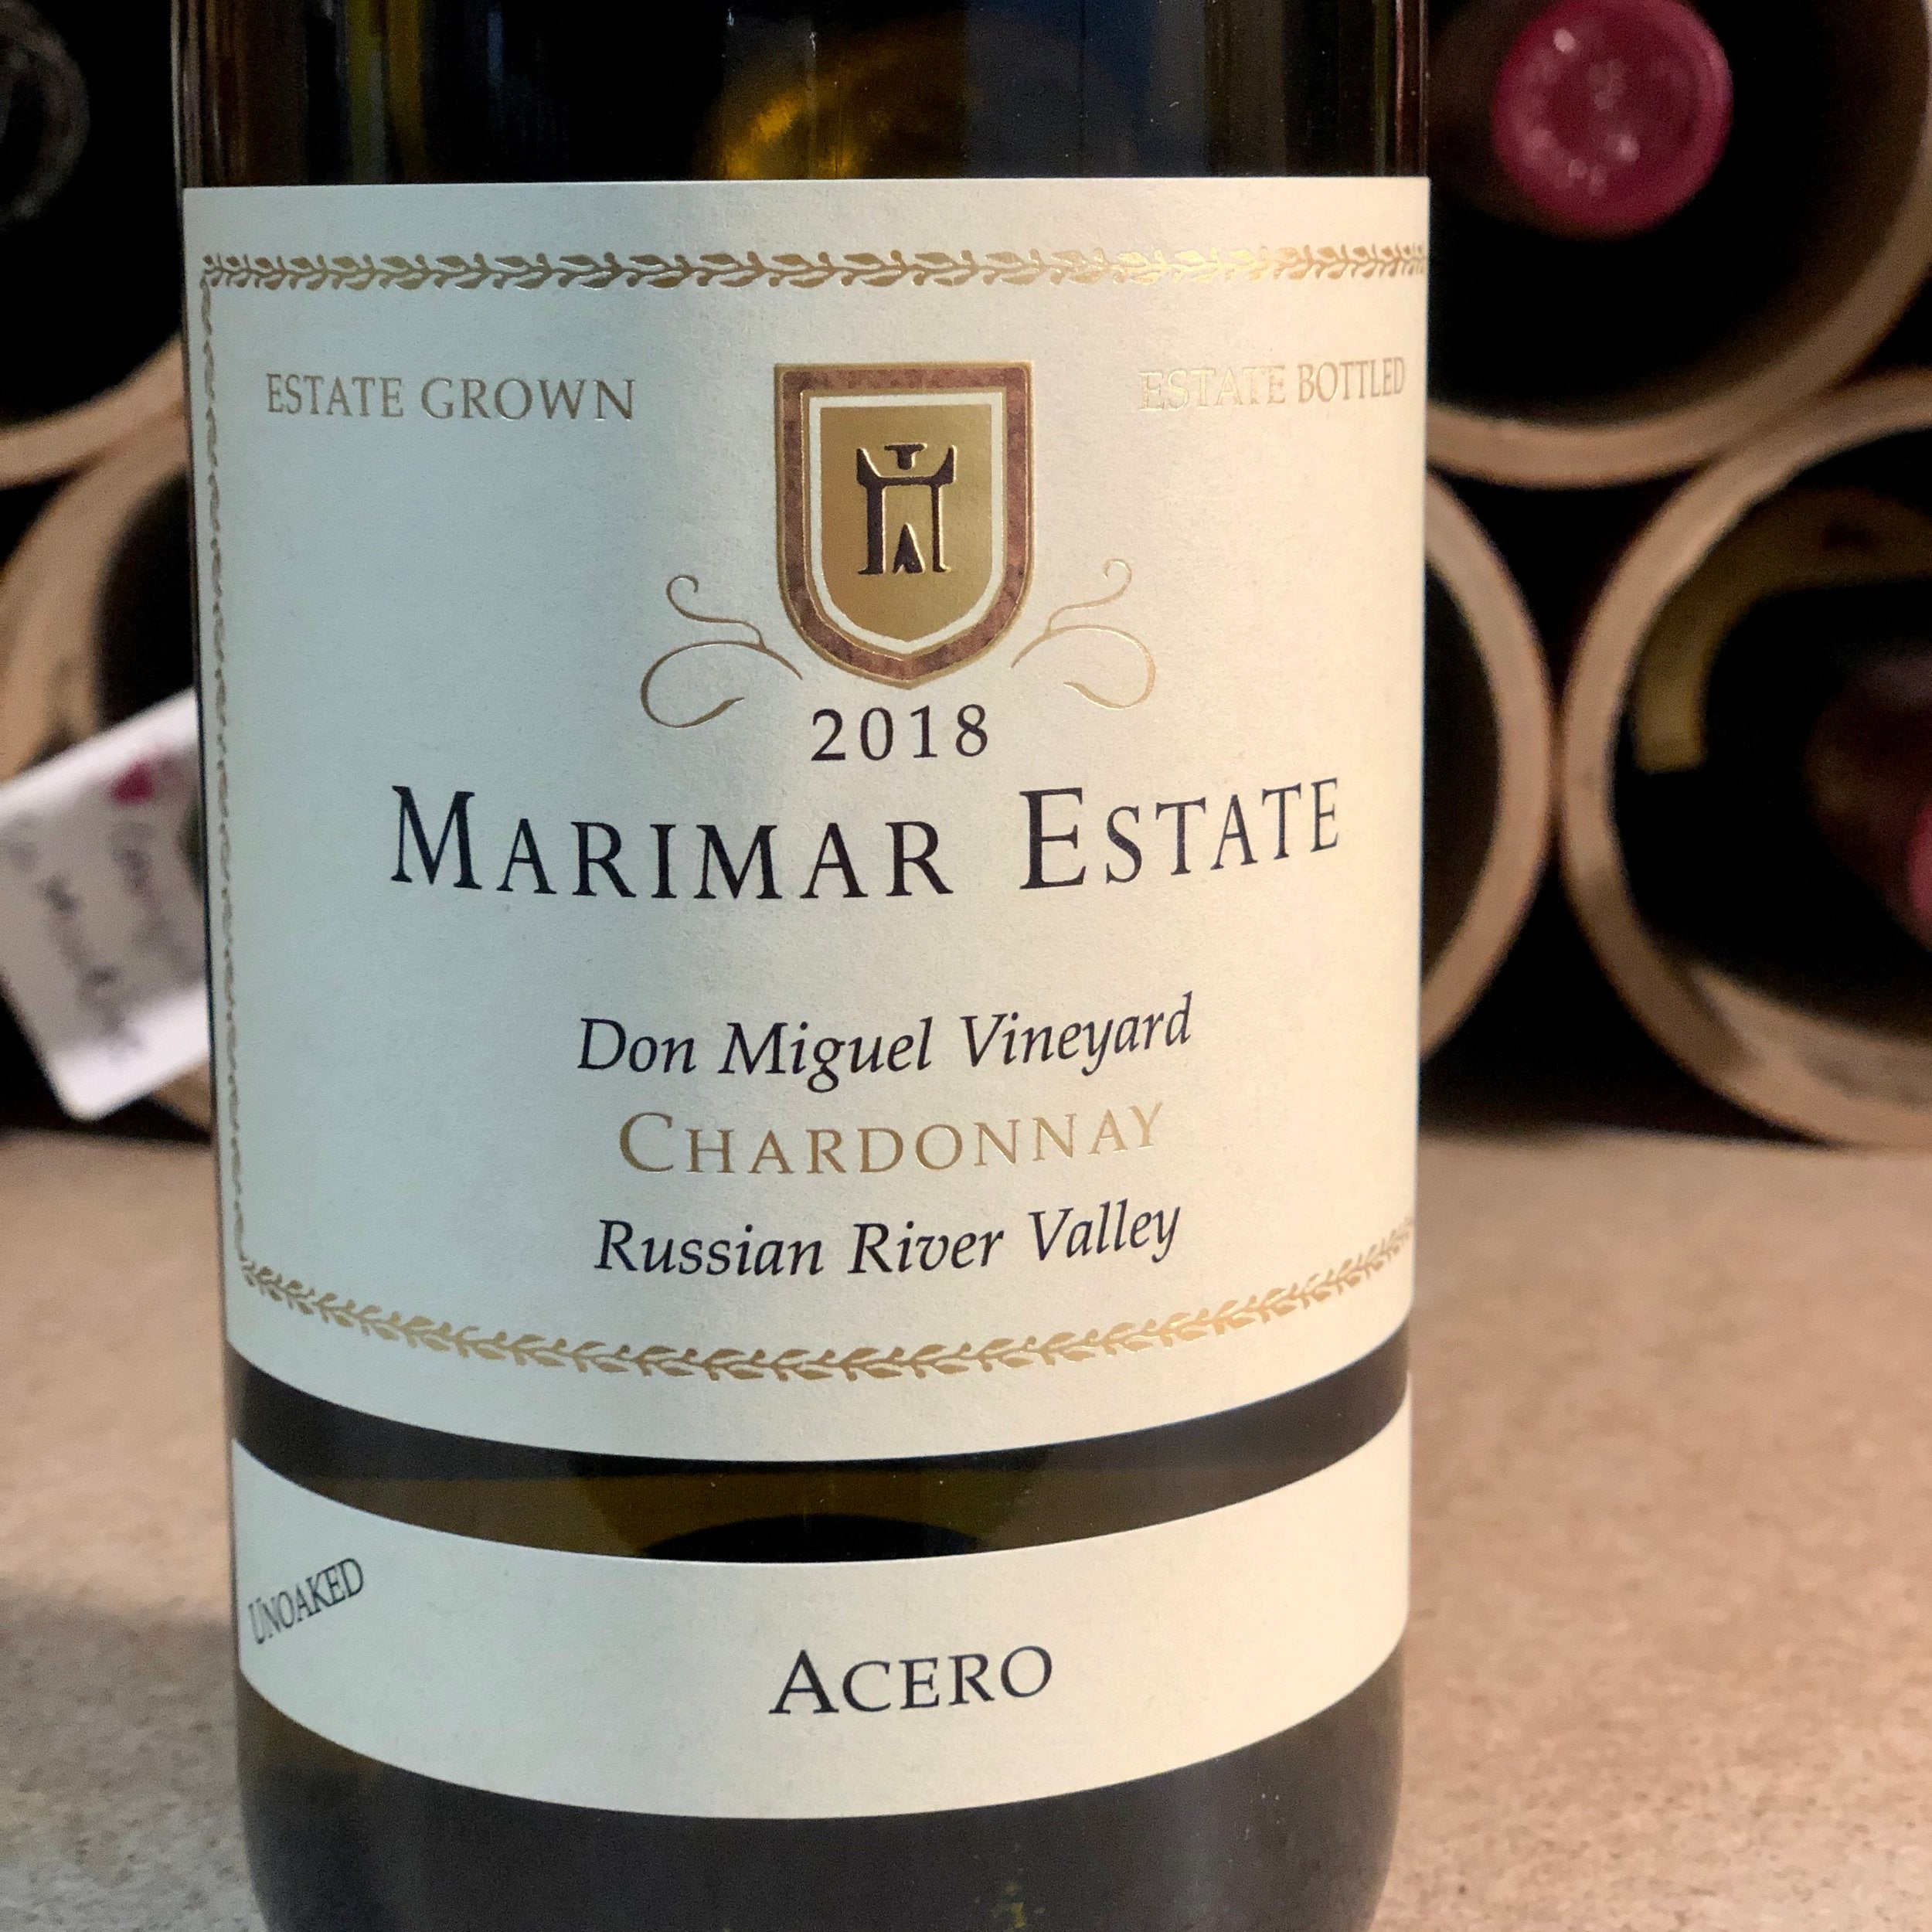 Marimar Estate, Don Miguel Vineyard, Acero, Chardonnay 2018